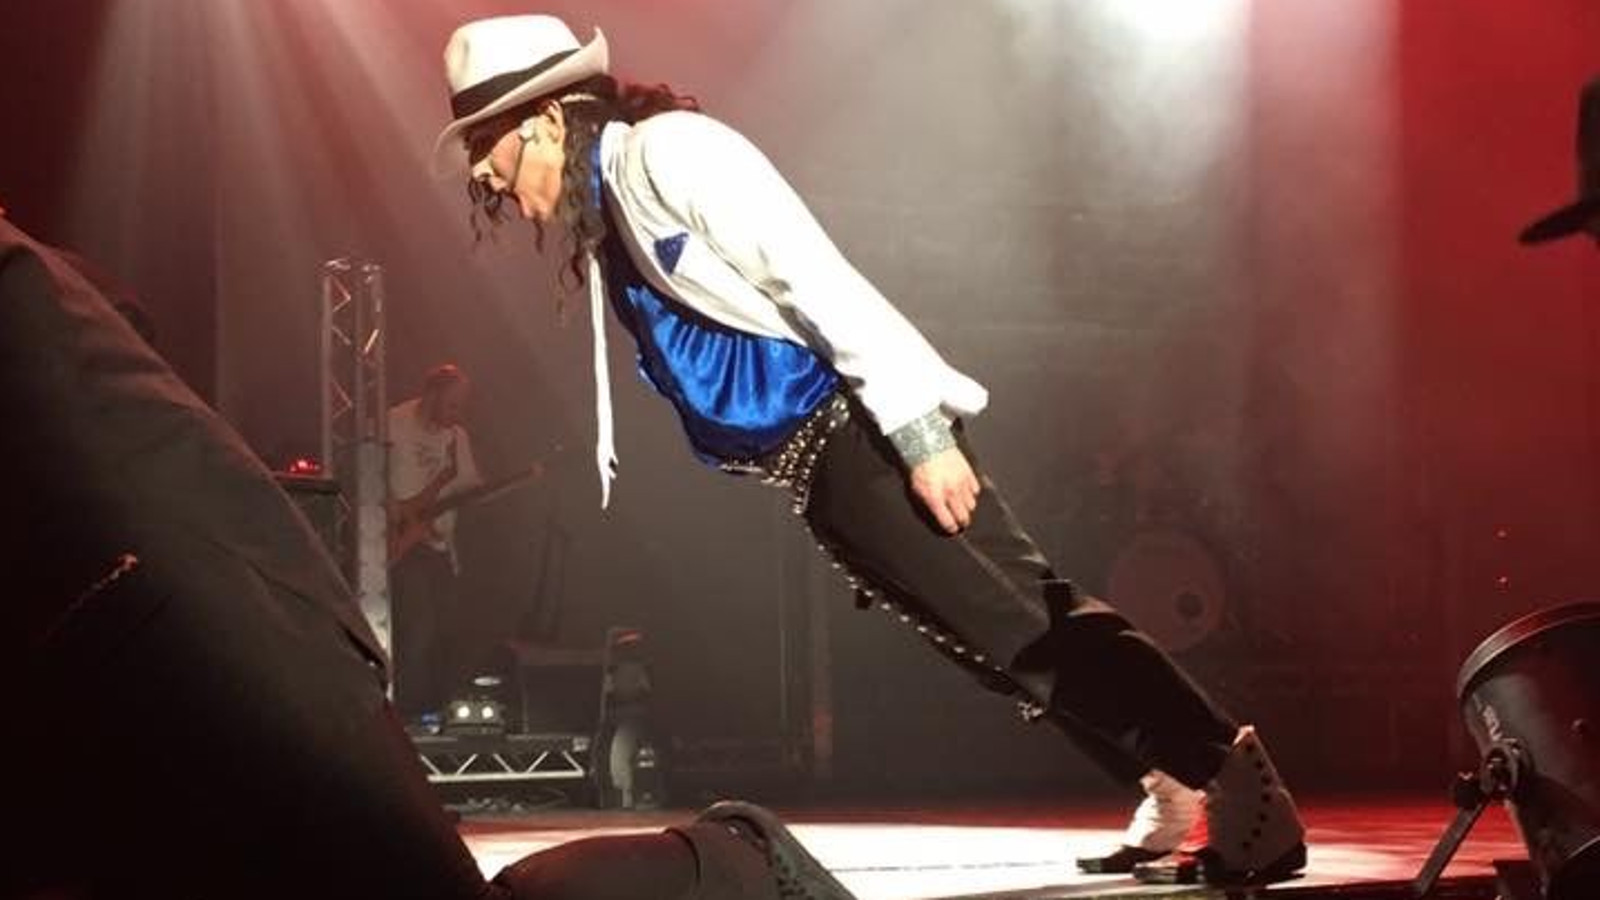 Kuvassa on Michael Jacksonia imitoiva miesesiintyjä sivuttain puoliksi taipuneena alaspäin.  Hänellä on vaalea hattu ja takki sekä kirkkaan sininen kiiltävä paita. Tausta on tumma.